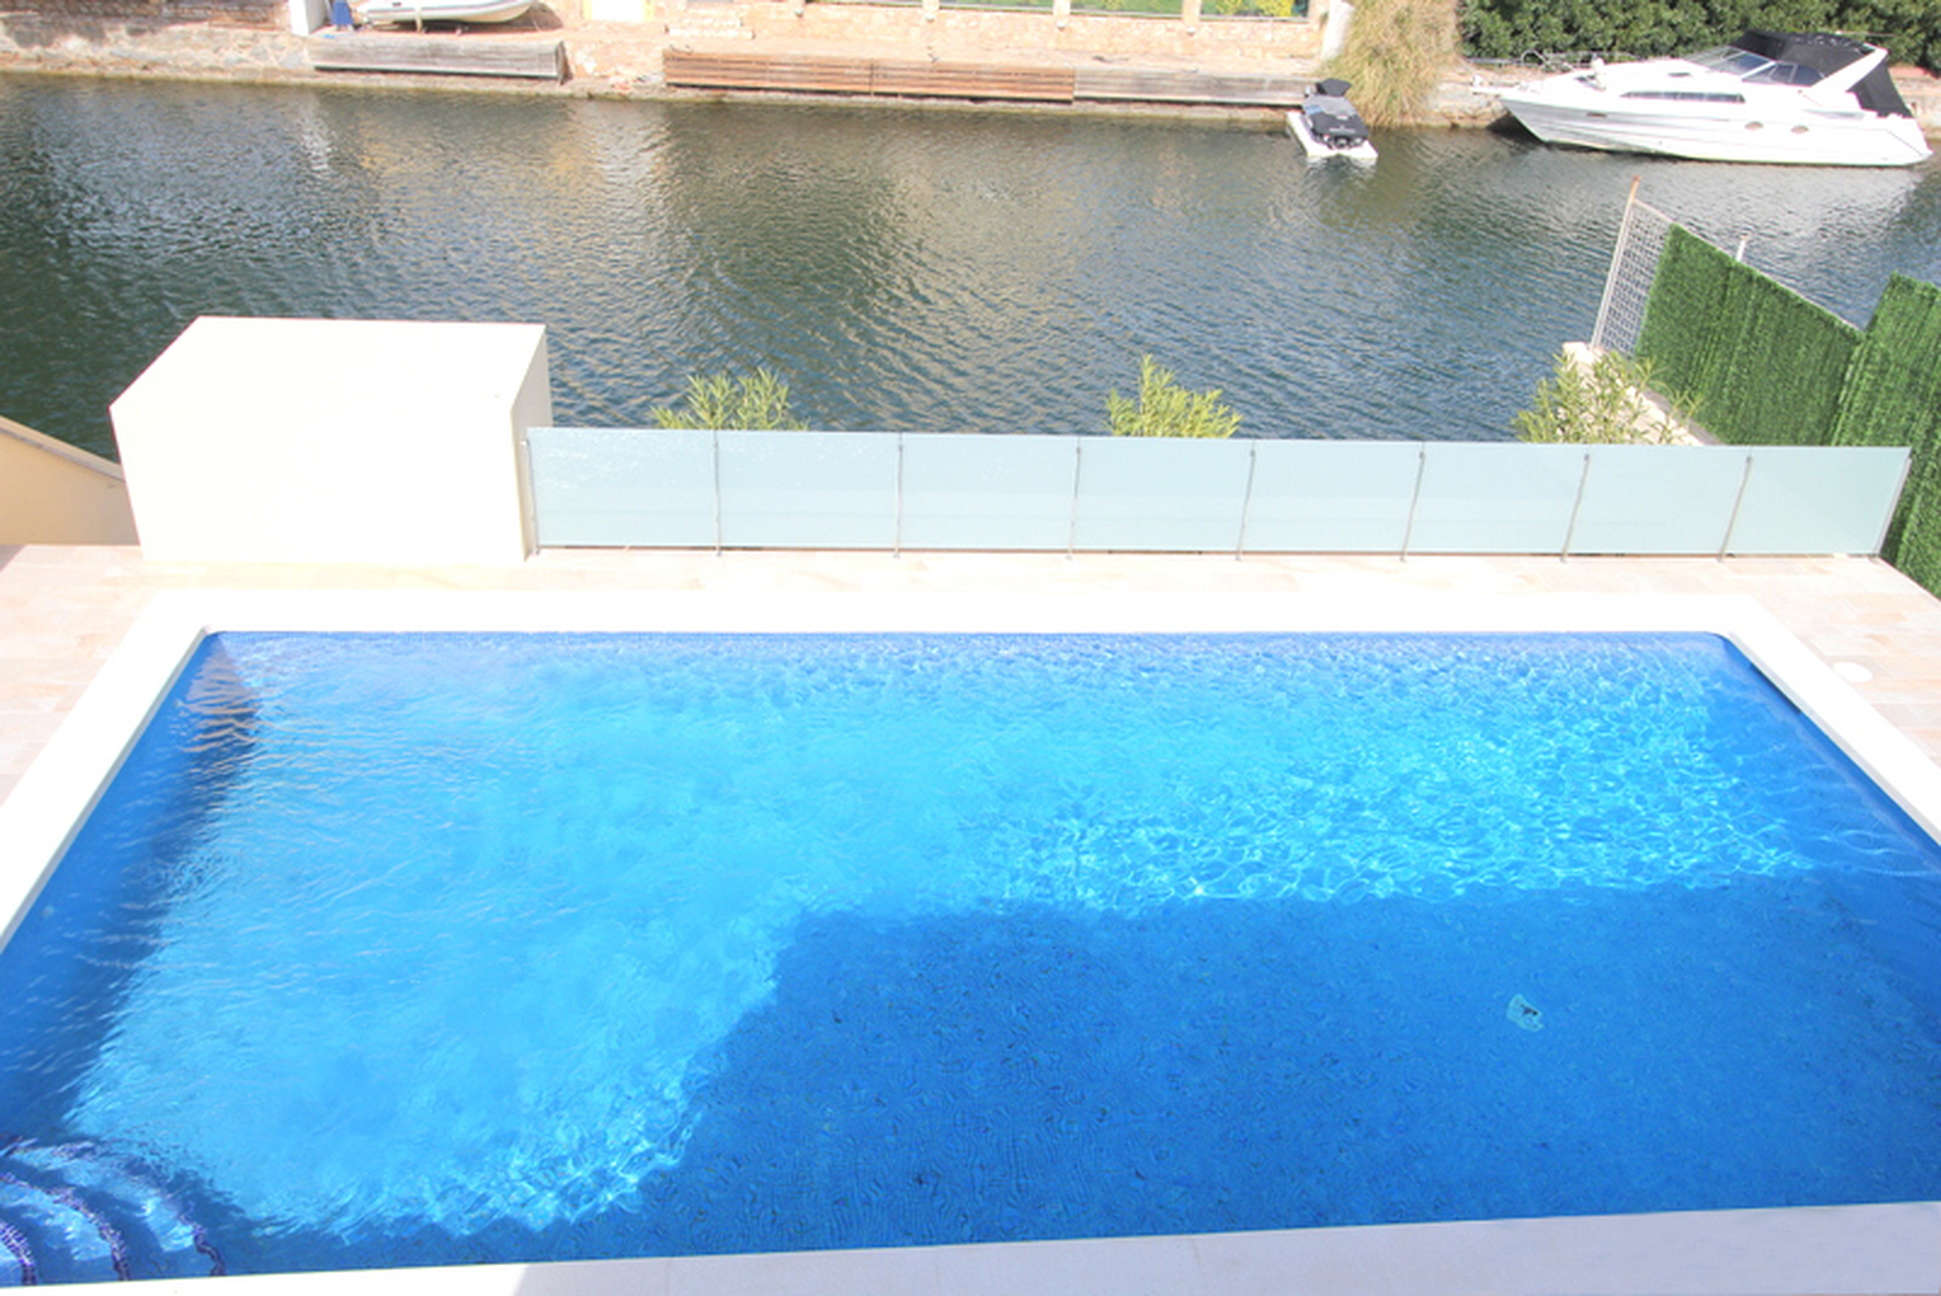 Empuriabrava, Nouvelle promotion de maison individuelle avec piscine et garage